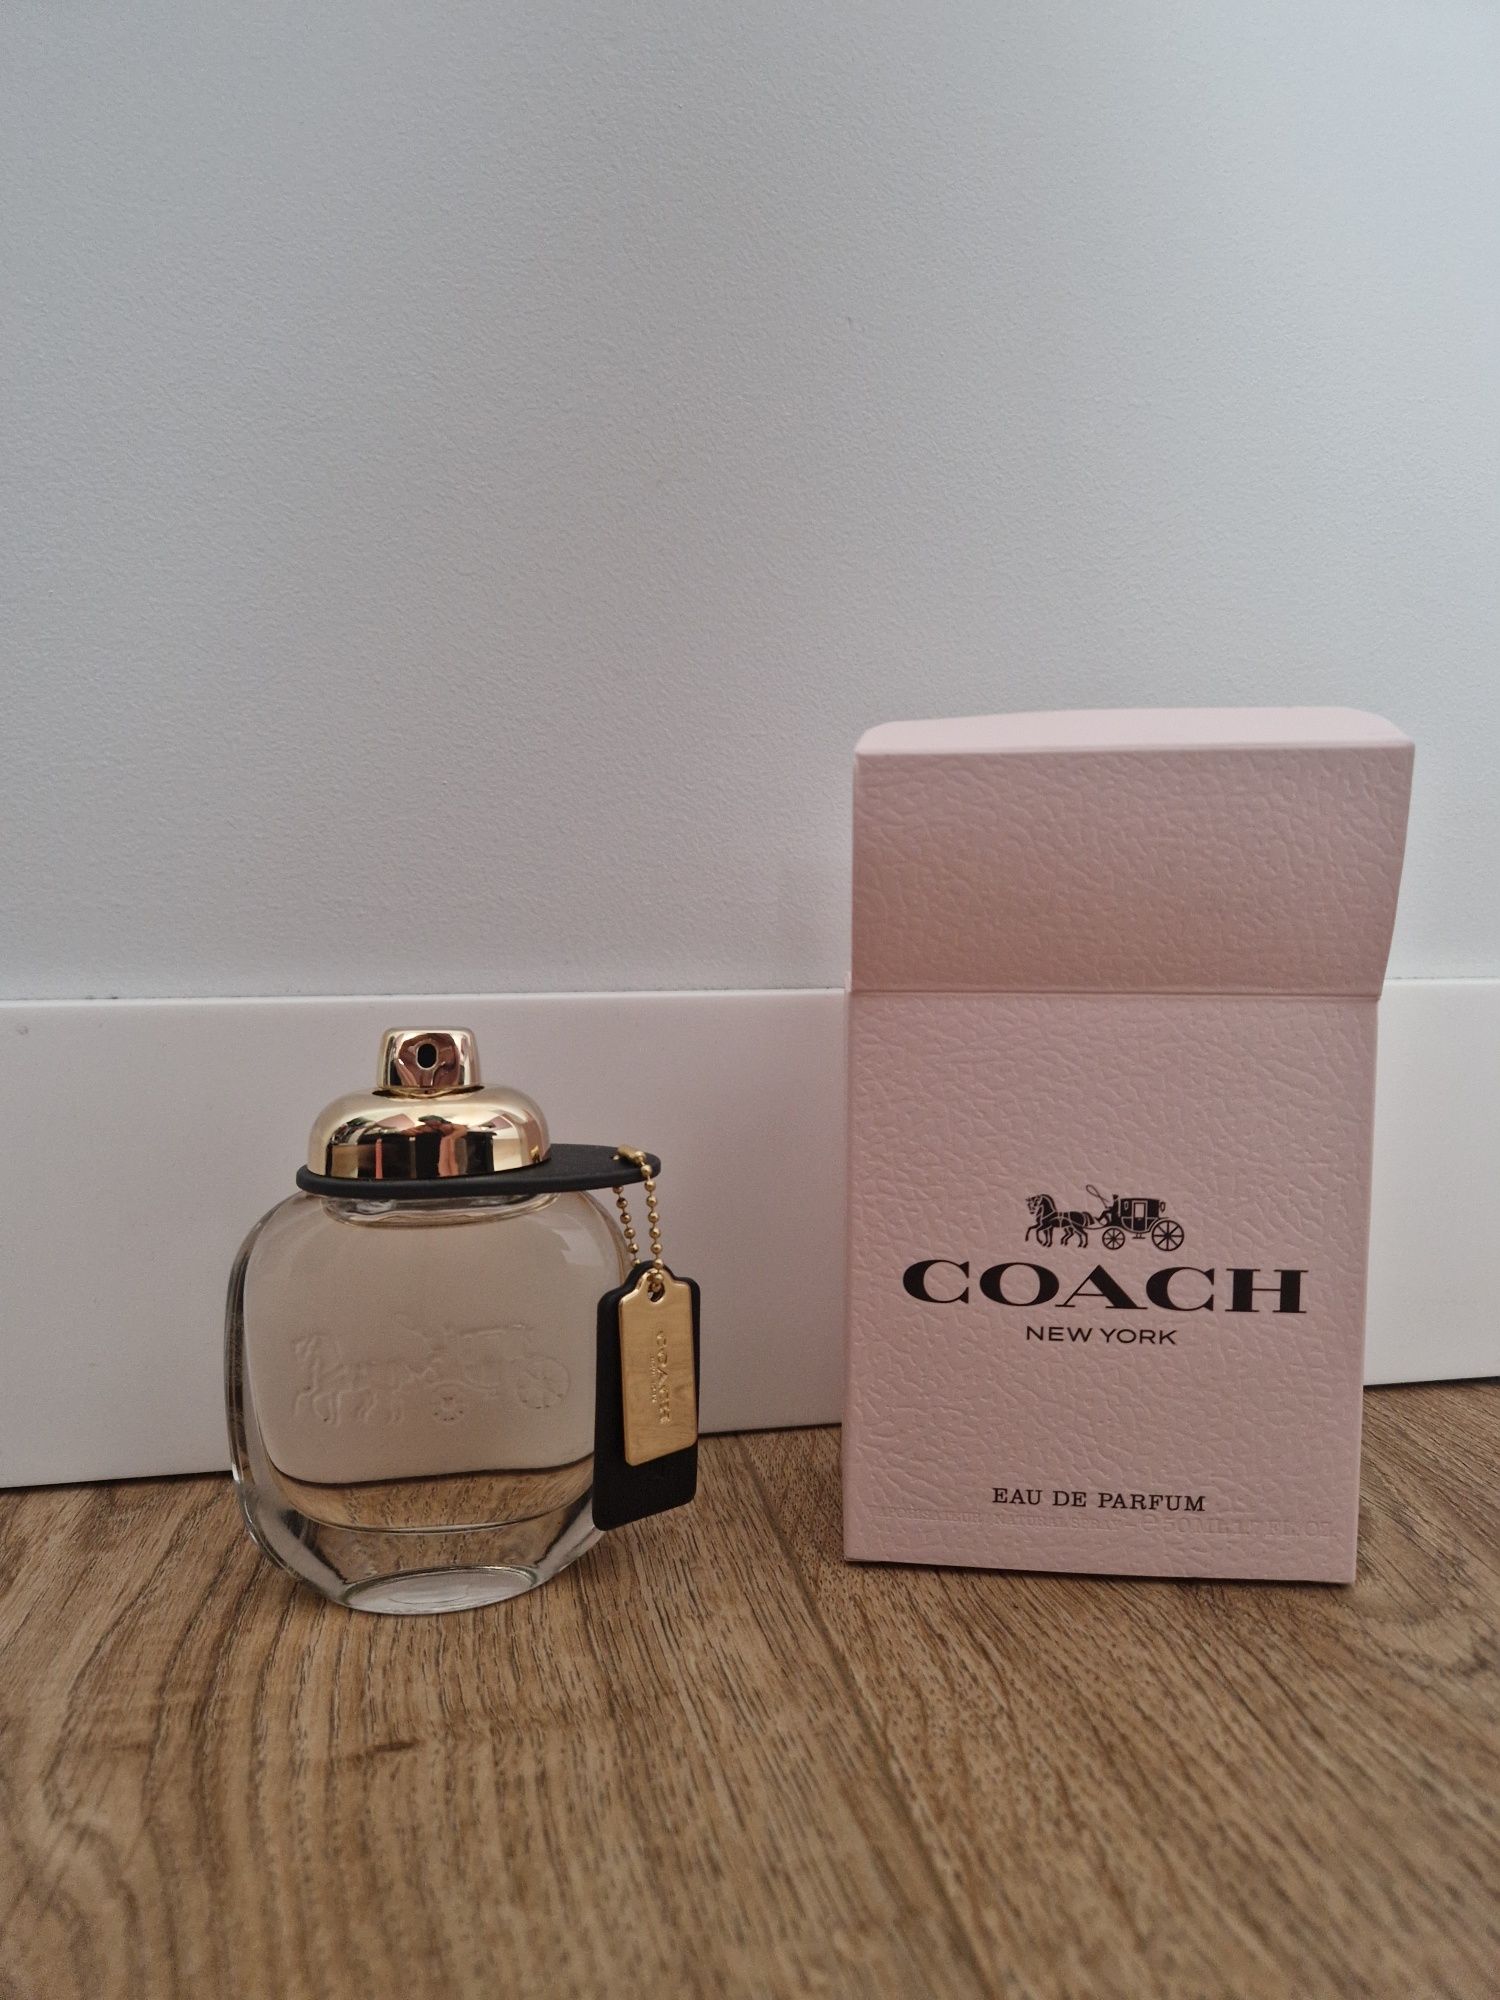 Nowe orginalne perfumy dla kobiet Coach New York woman 50ml